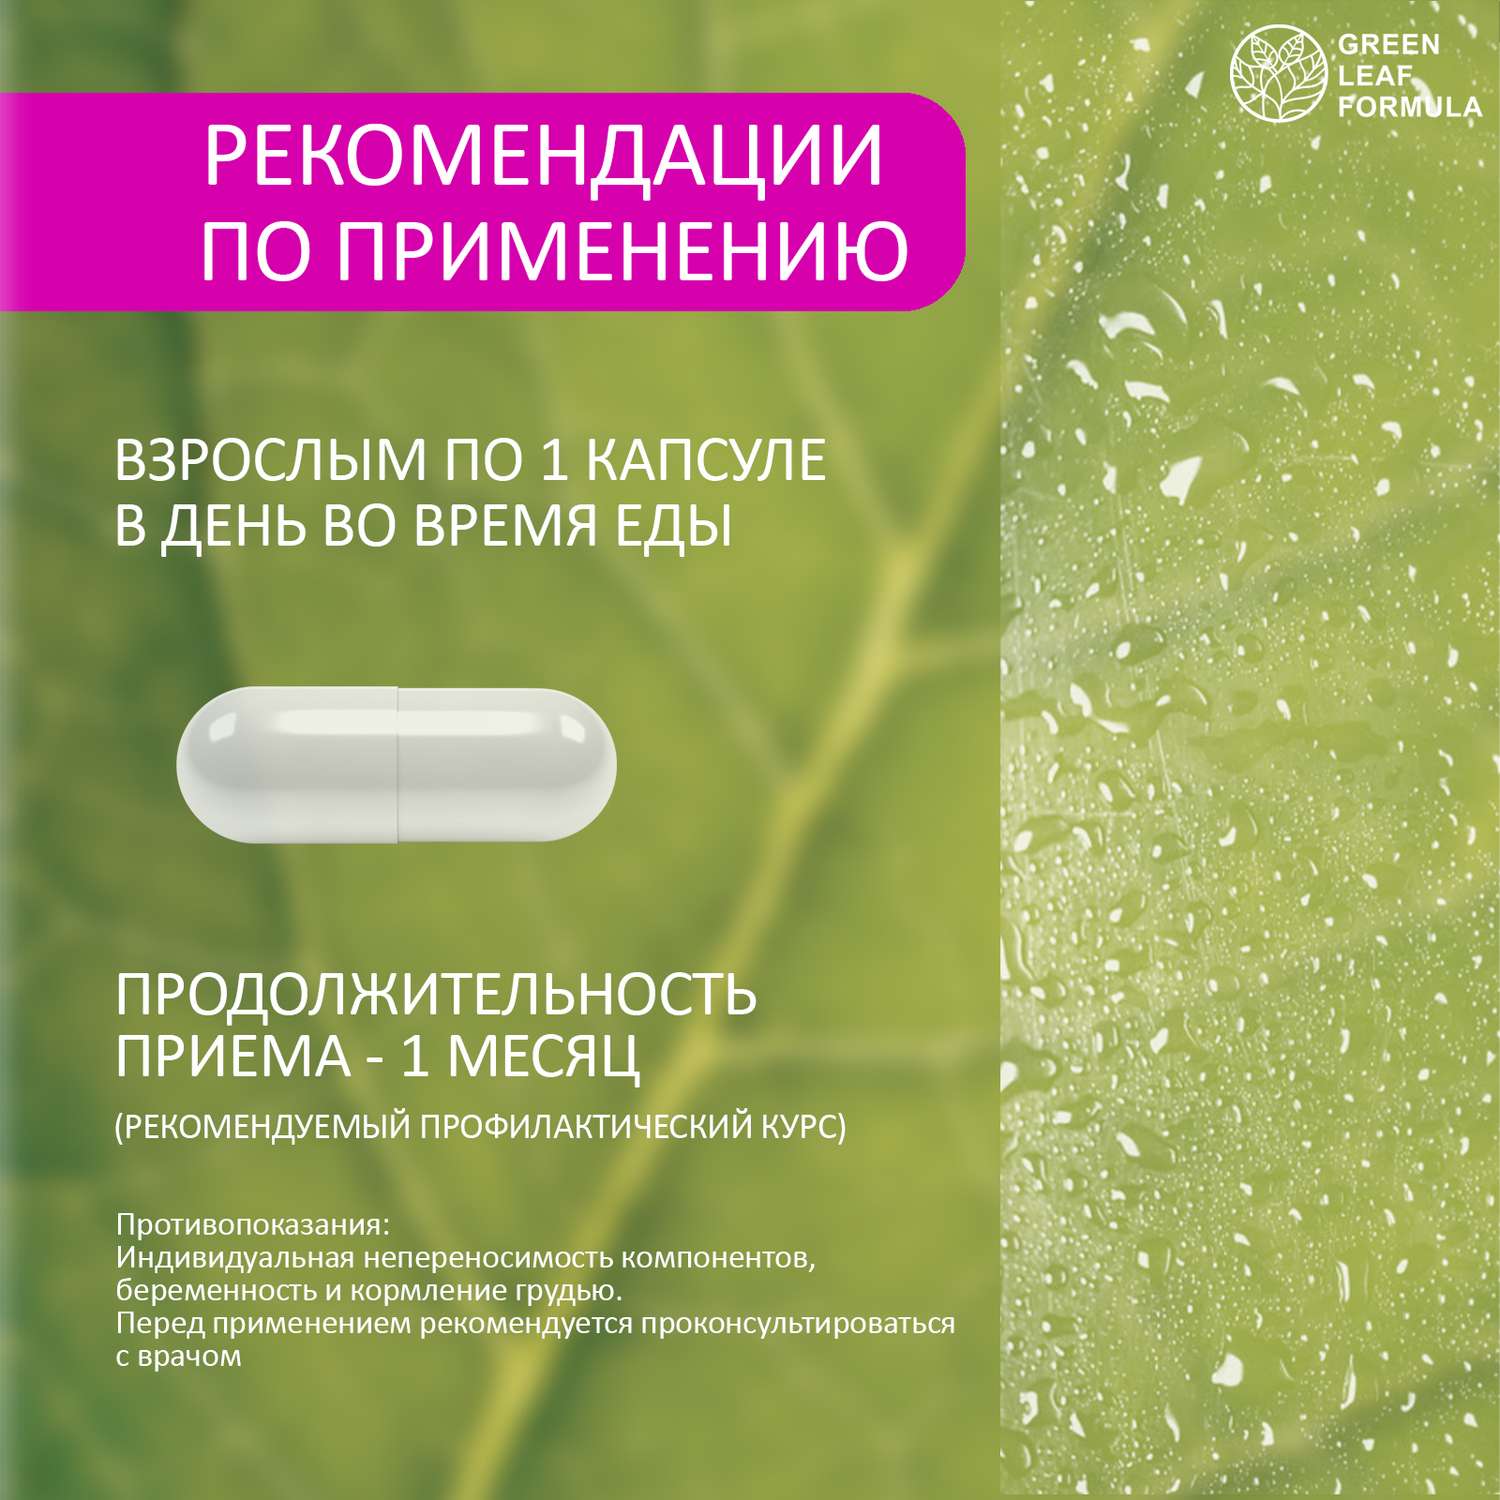 5 НТР 100 мг антидепрессант Green Leaf Formula от стресса и депрессии успокоительное для взрослых от нервов - фото 7